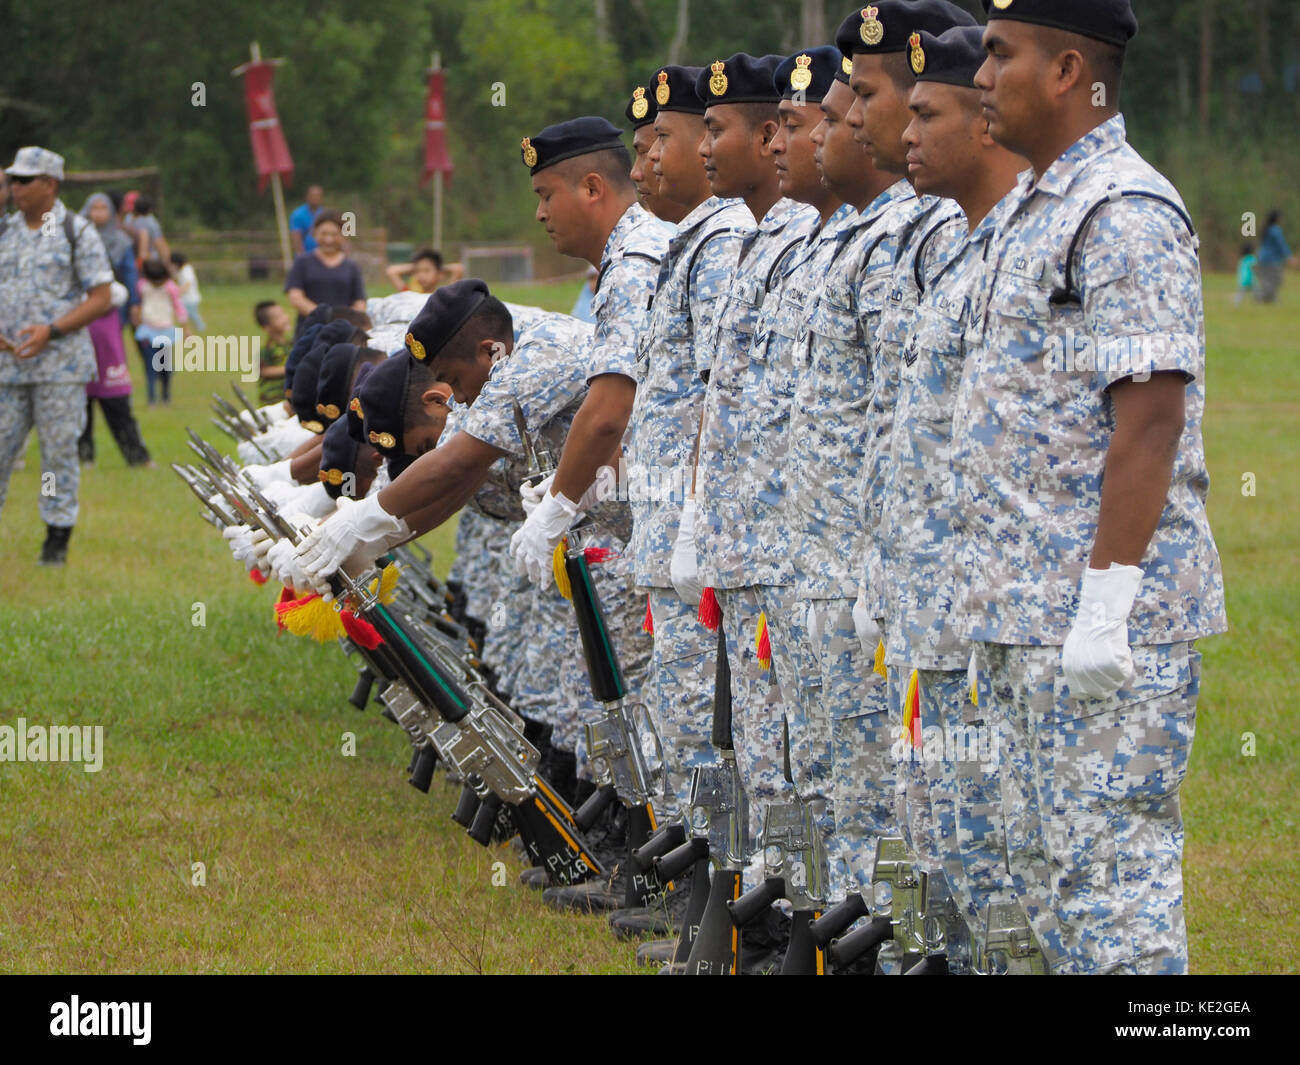 Exposición de perforación silenciosa por la Marina Real de Malasia desde Lumut equipo base en Malasia. Foto de stock